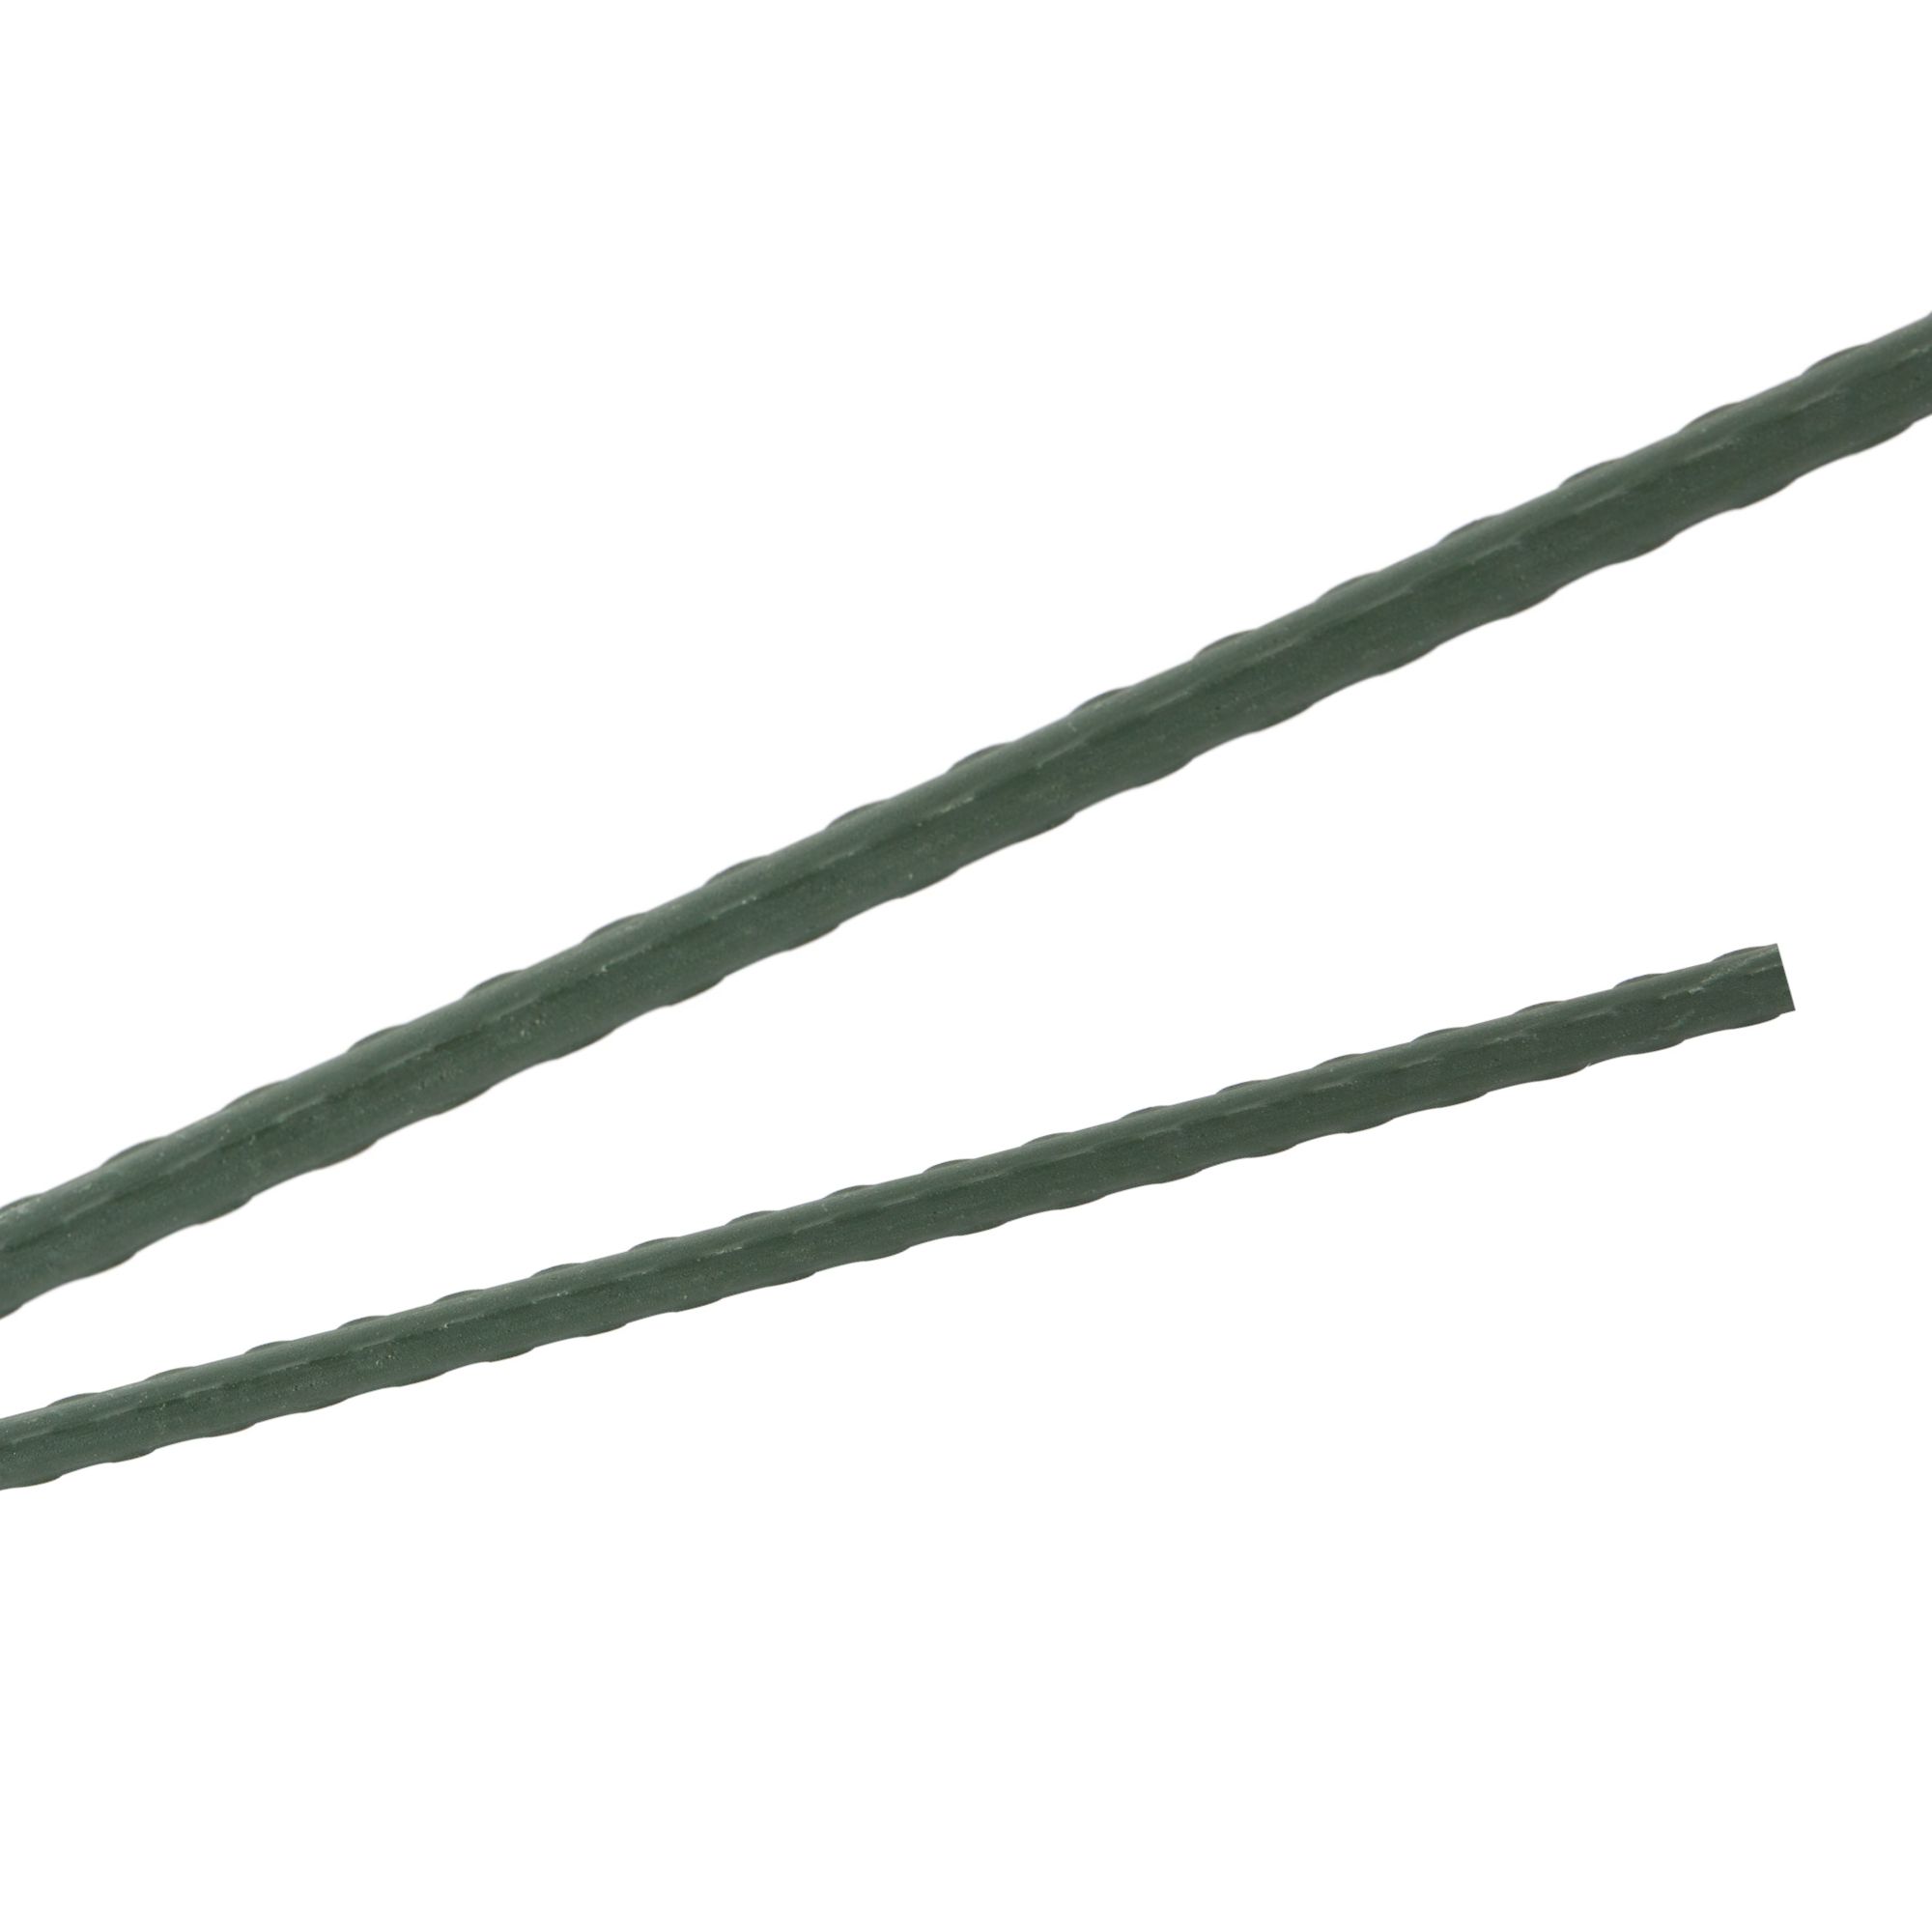 Tyč podpěrná, 16mm, 150cm, kov+PVC, zelená 0.212000 Kg GIGA Sklad20 32014 184